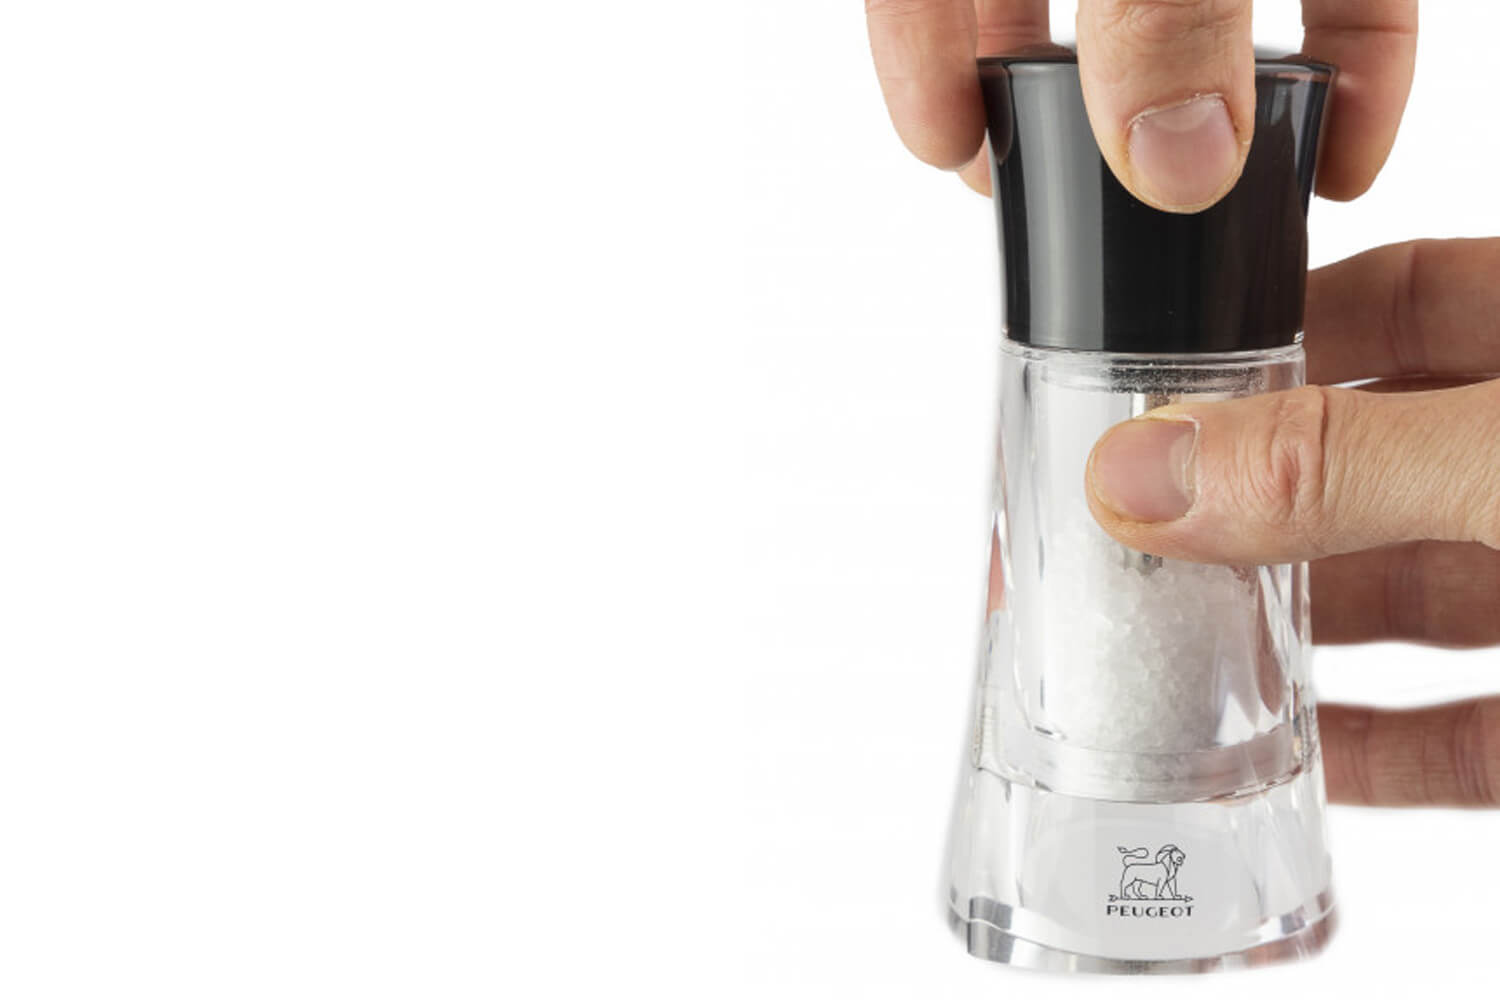 Moulin à sel sec manuel Peugeot Molène en acrylique noir et transparent 14cm